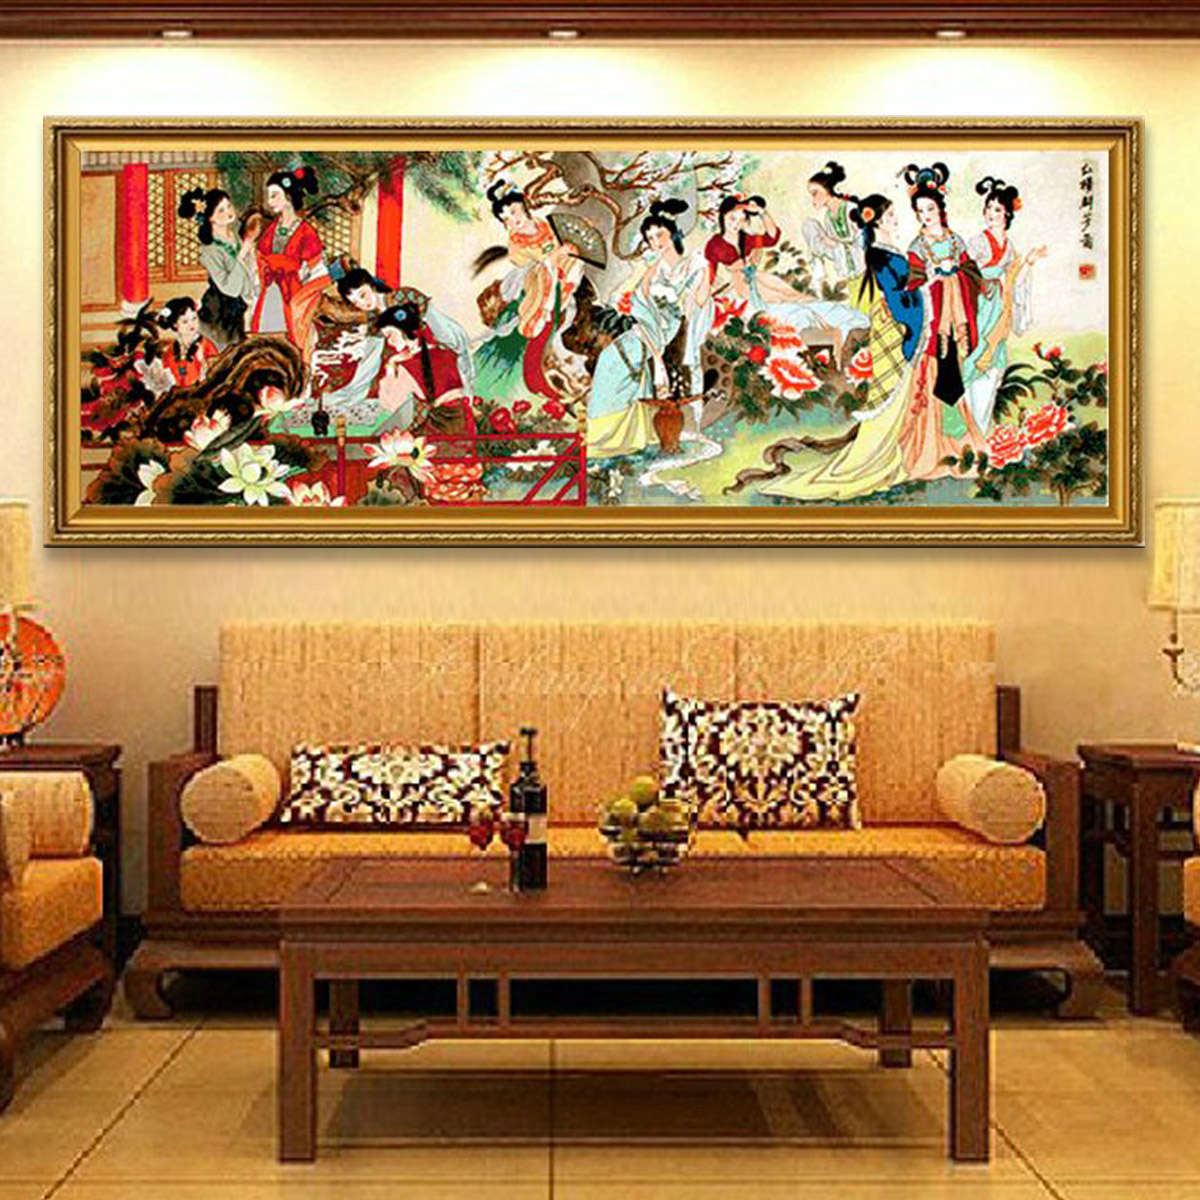 新款印花正品DMC十字绣套件客厅大画 中国风古典人物画红楼群芳